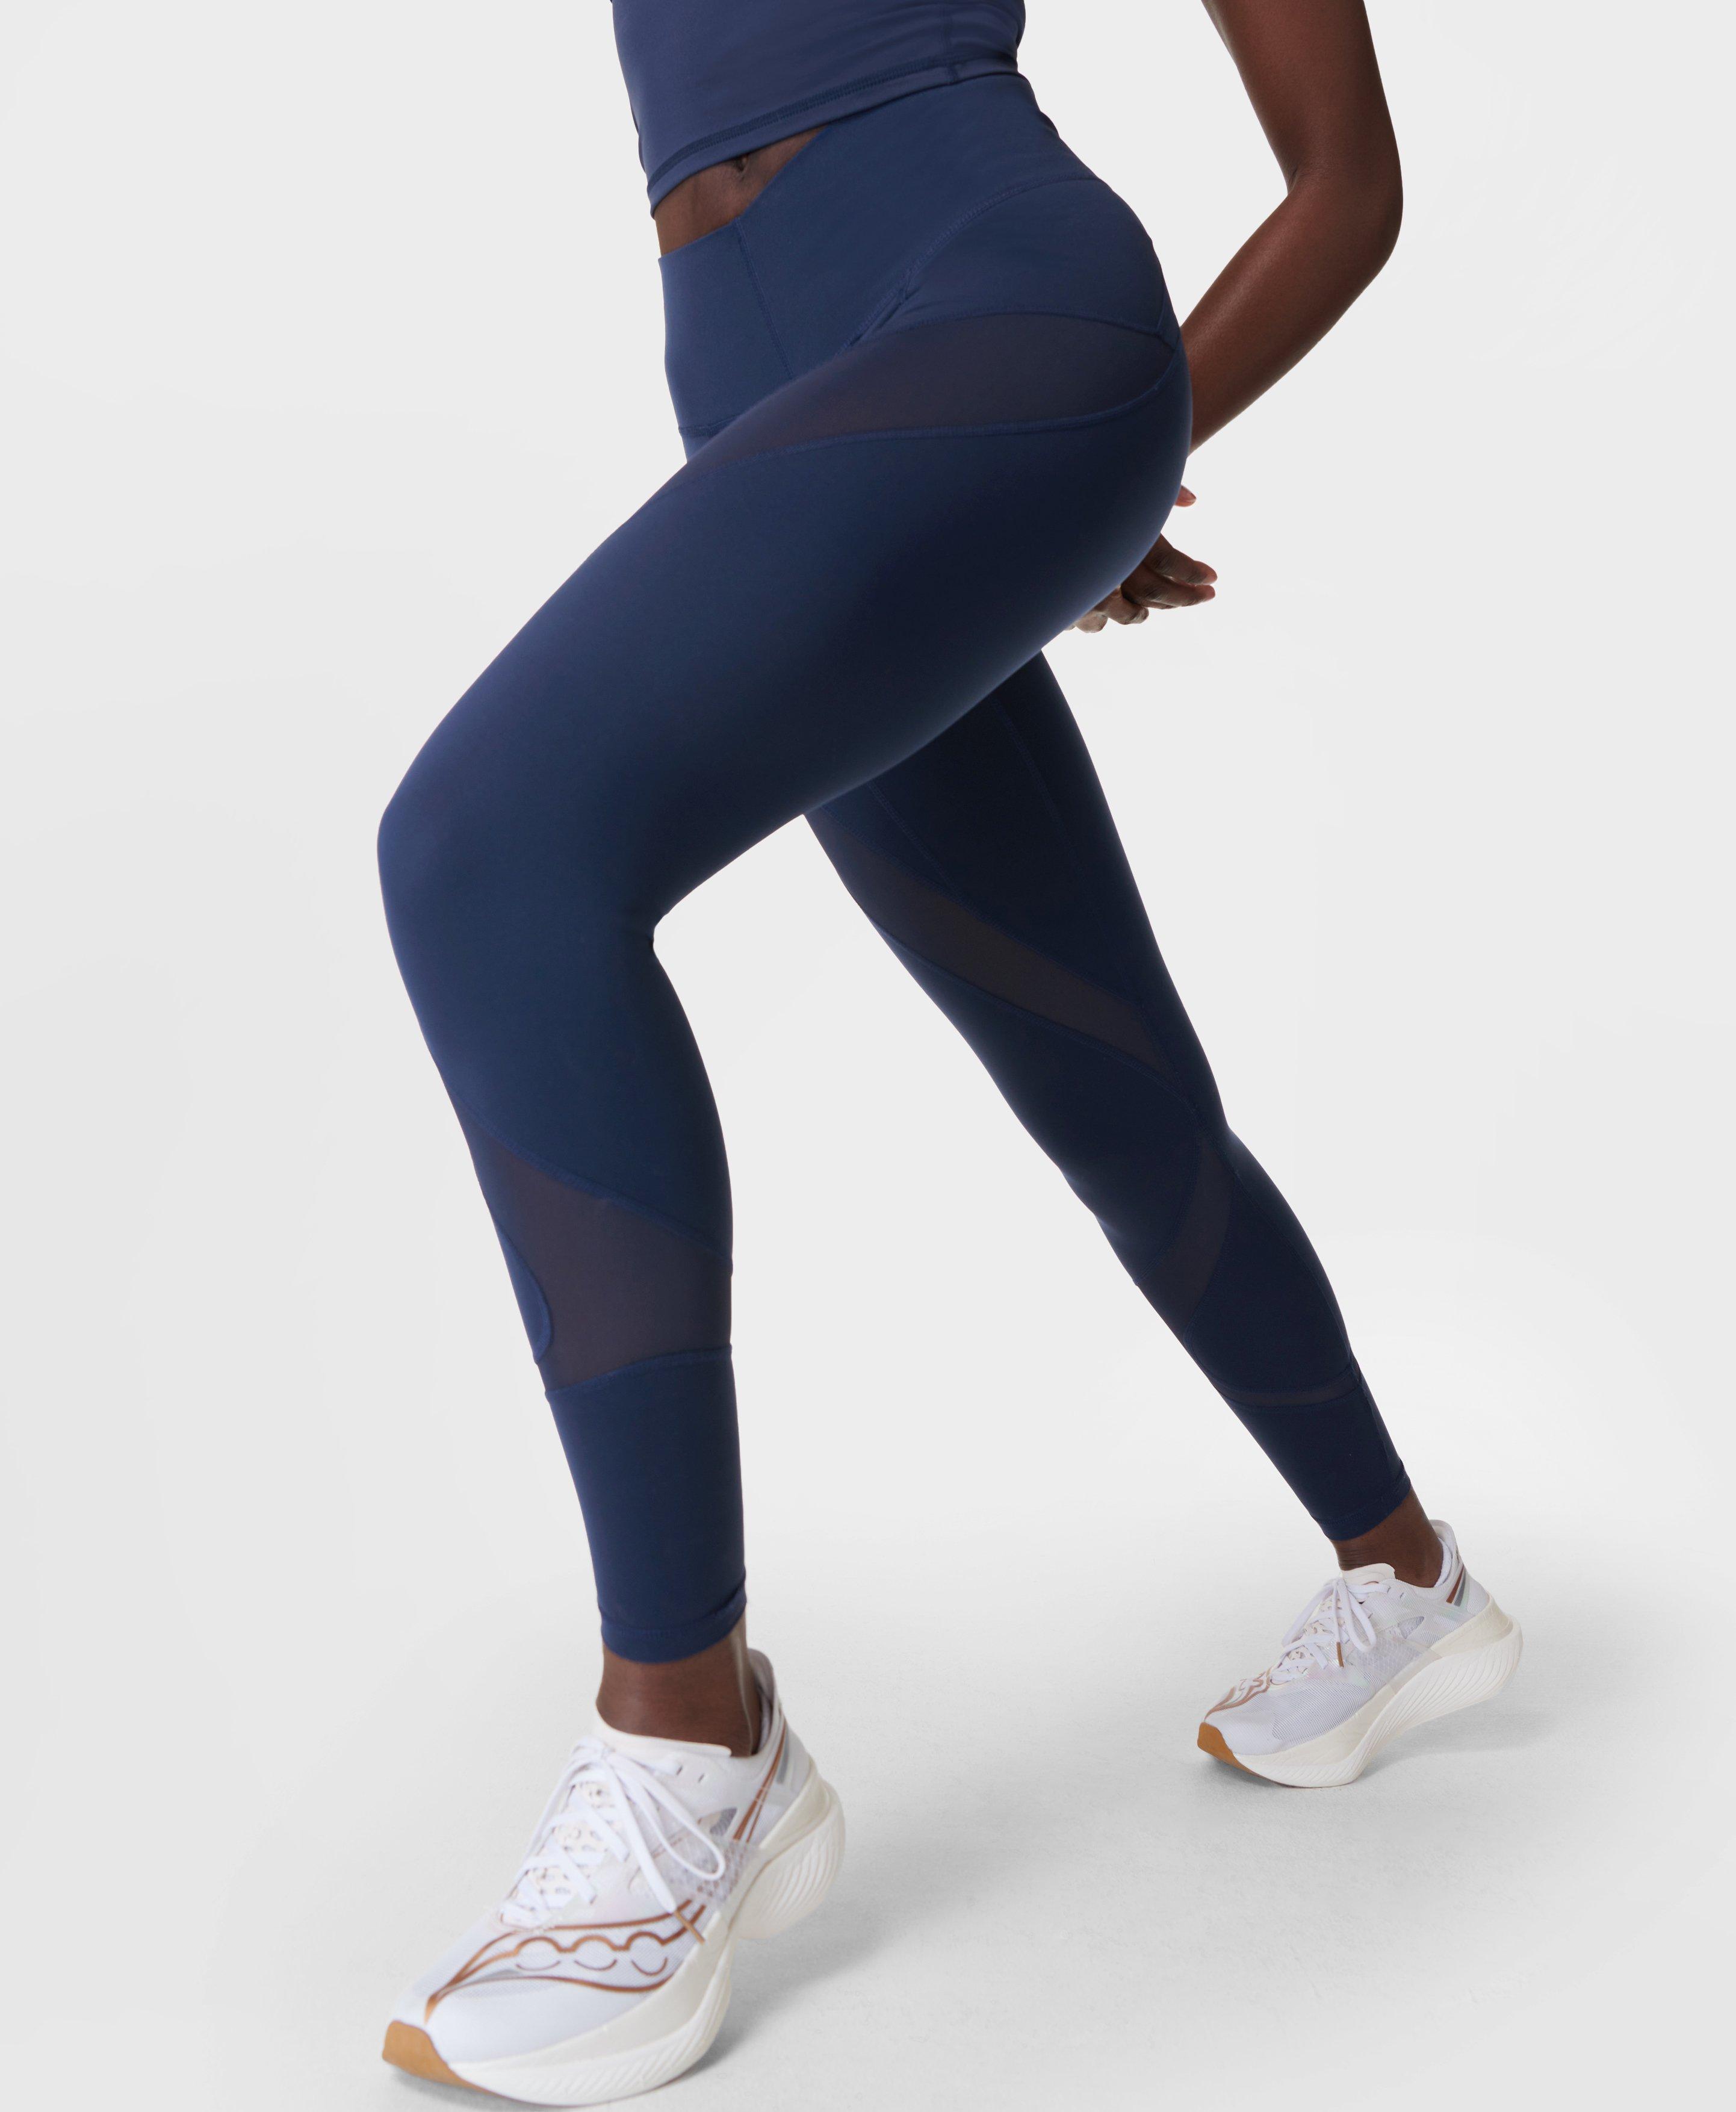 Women's Gym Leggings - Black - Navy blue, Dark blue - Starever - Decathlon